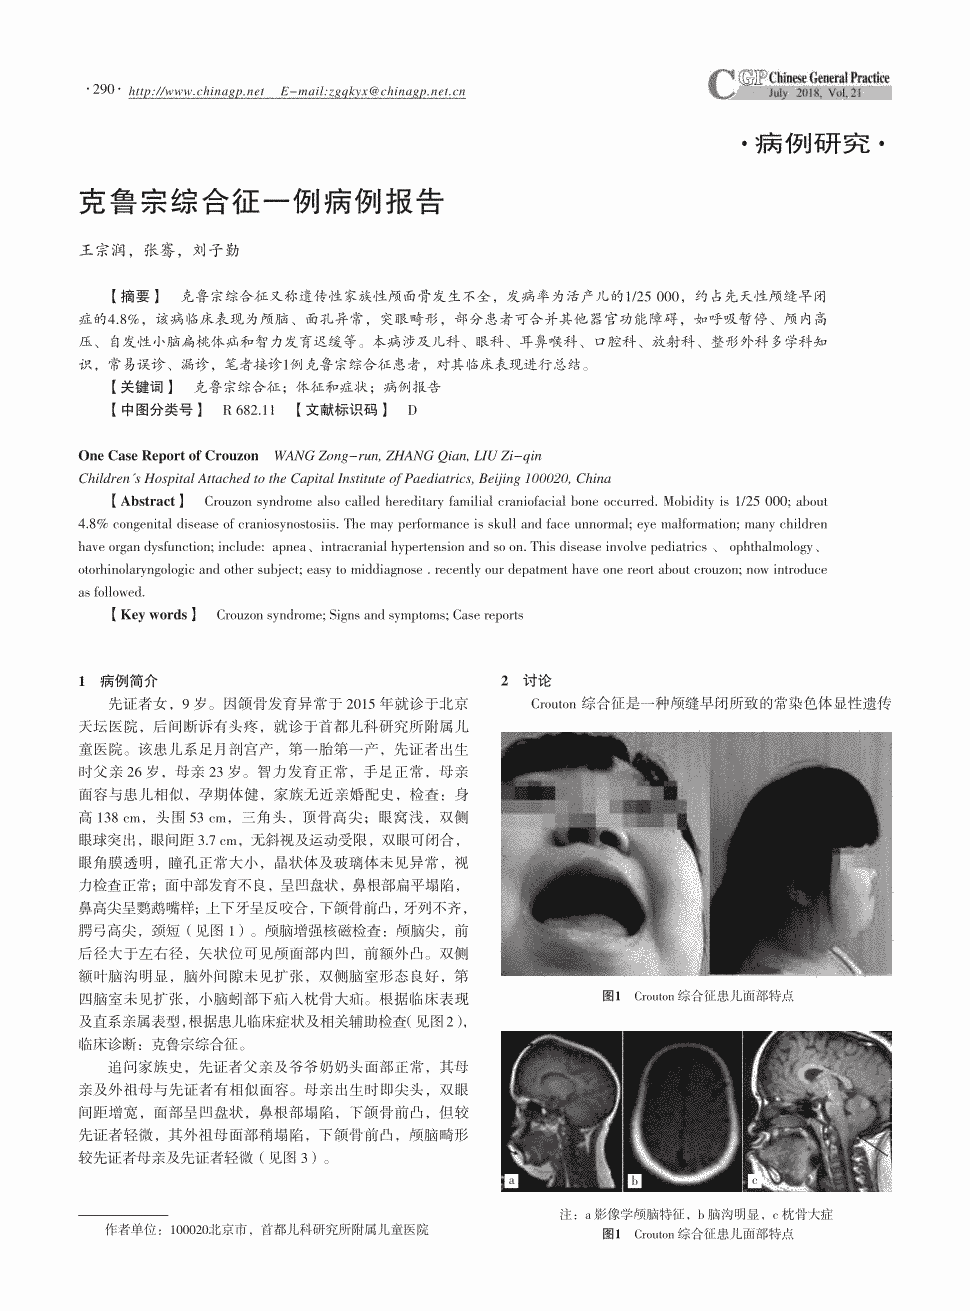 期刊克鲁宗综合征一例病例报告     克鲁宗综合征又称遗传性家族性颅